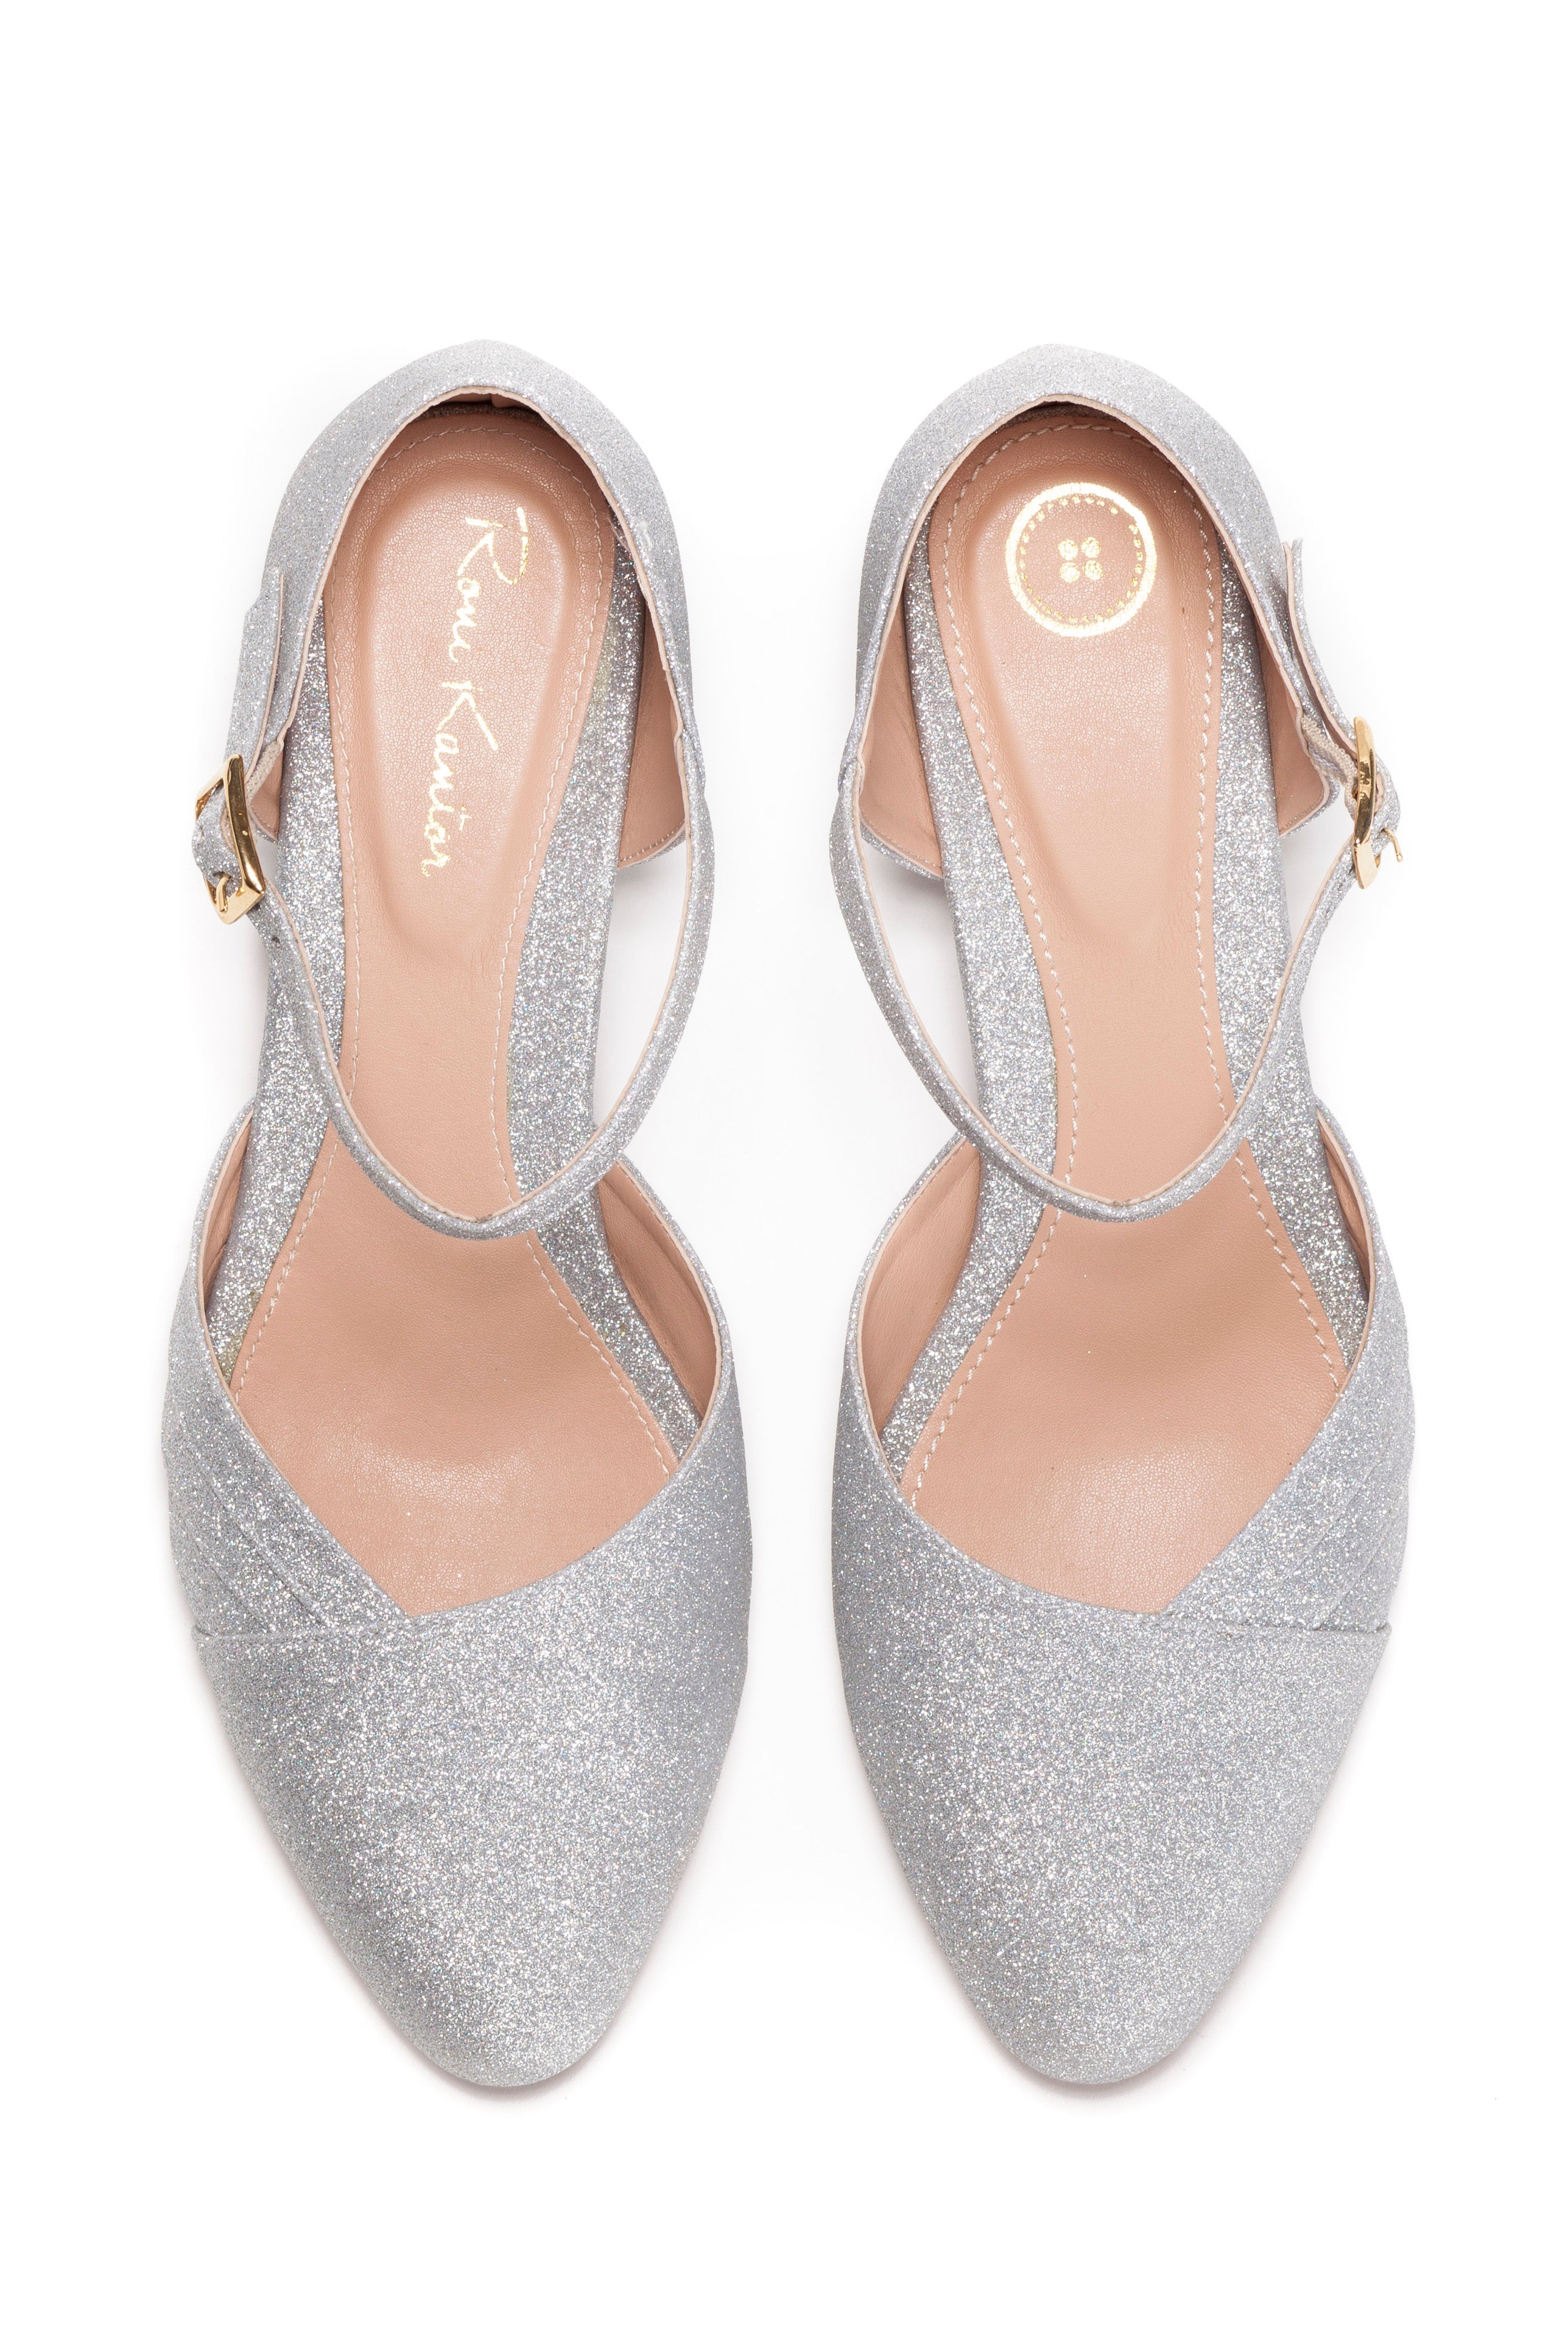 silver heels low heel